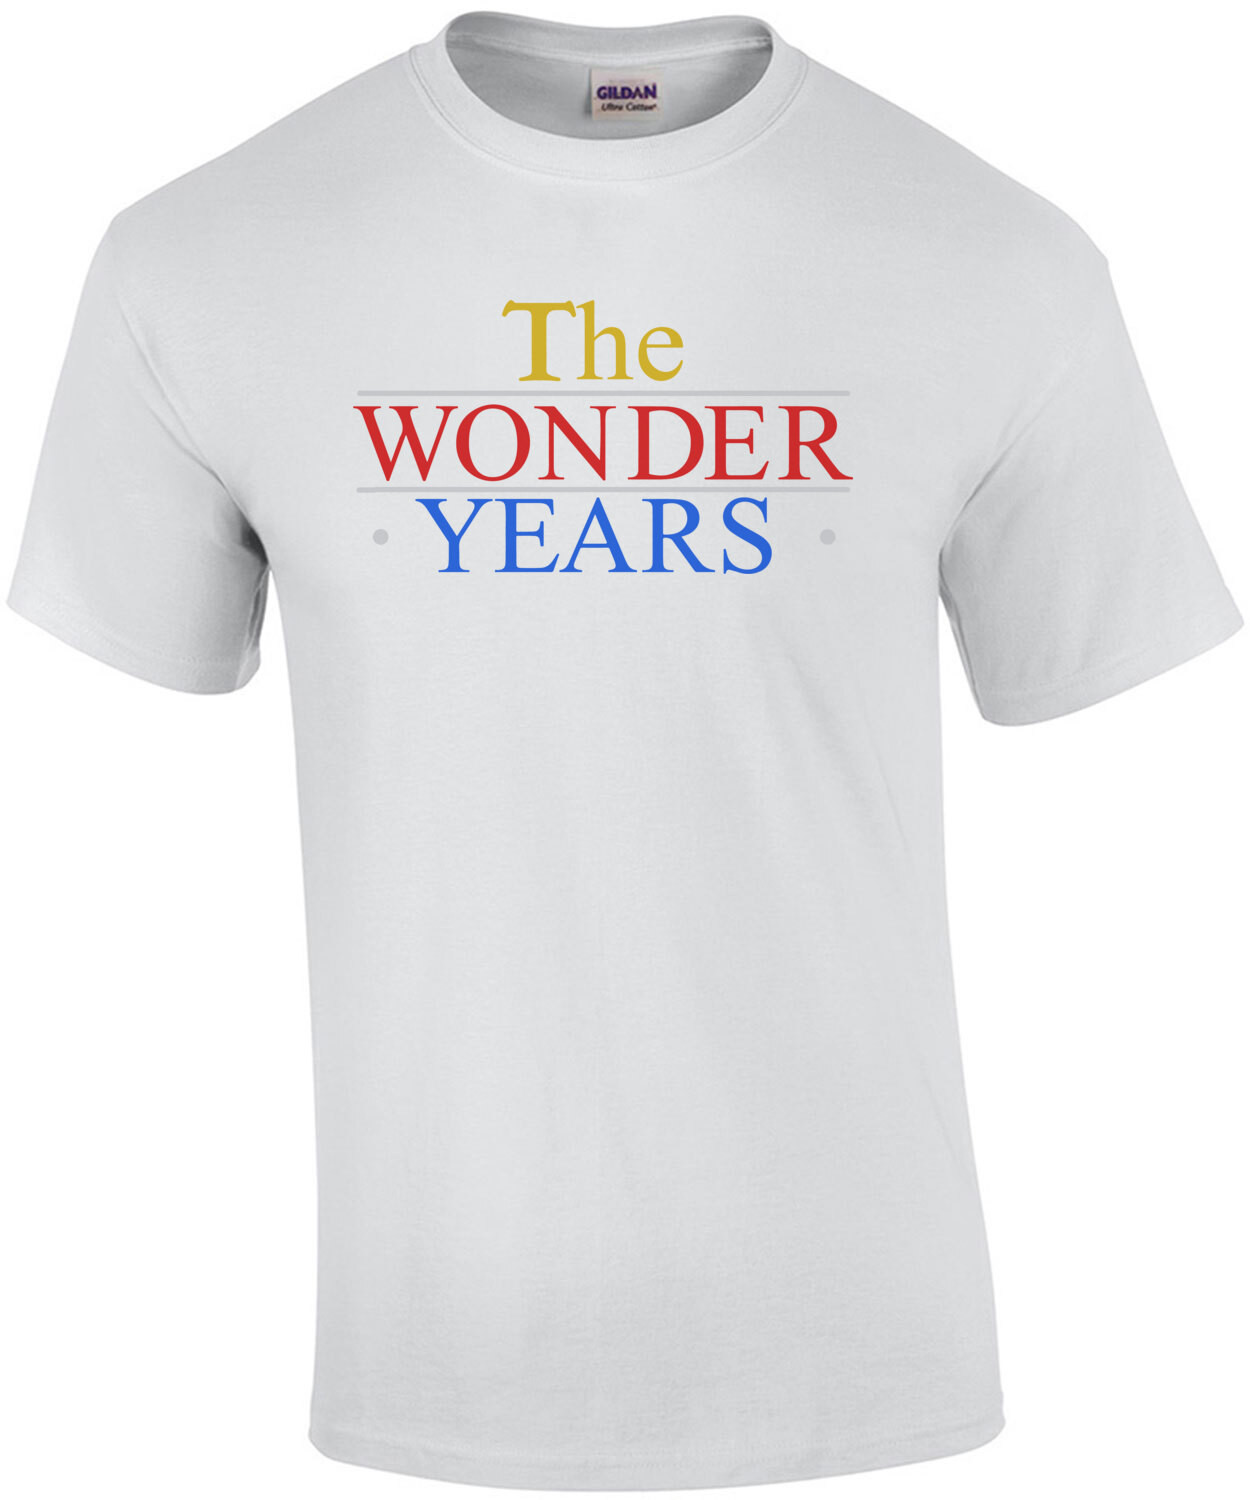 The Wonder Years - 80's T-Shirt